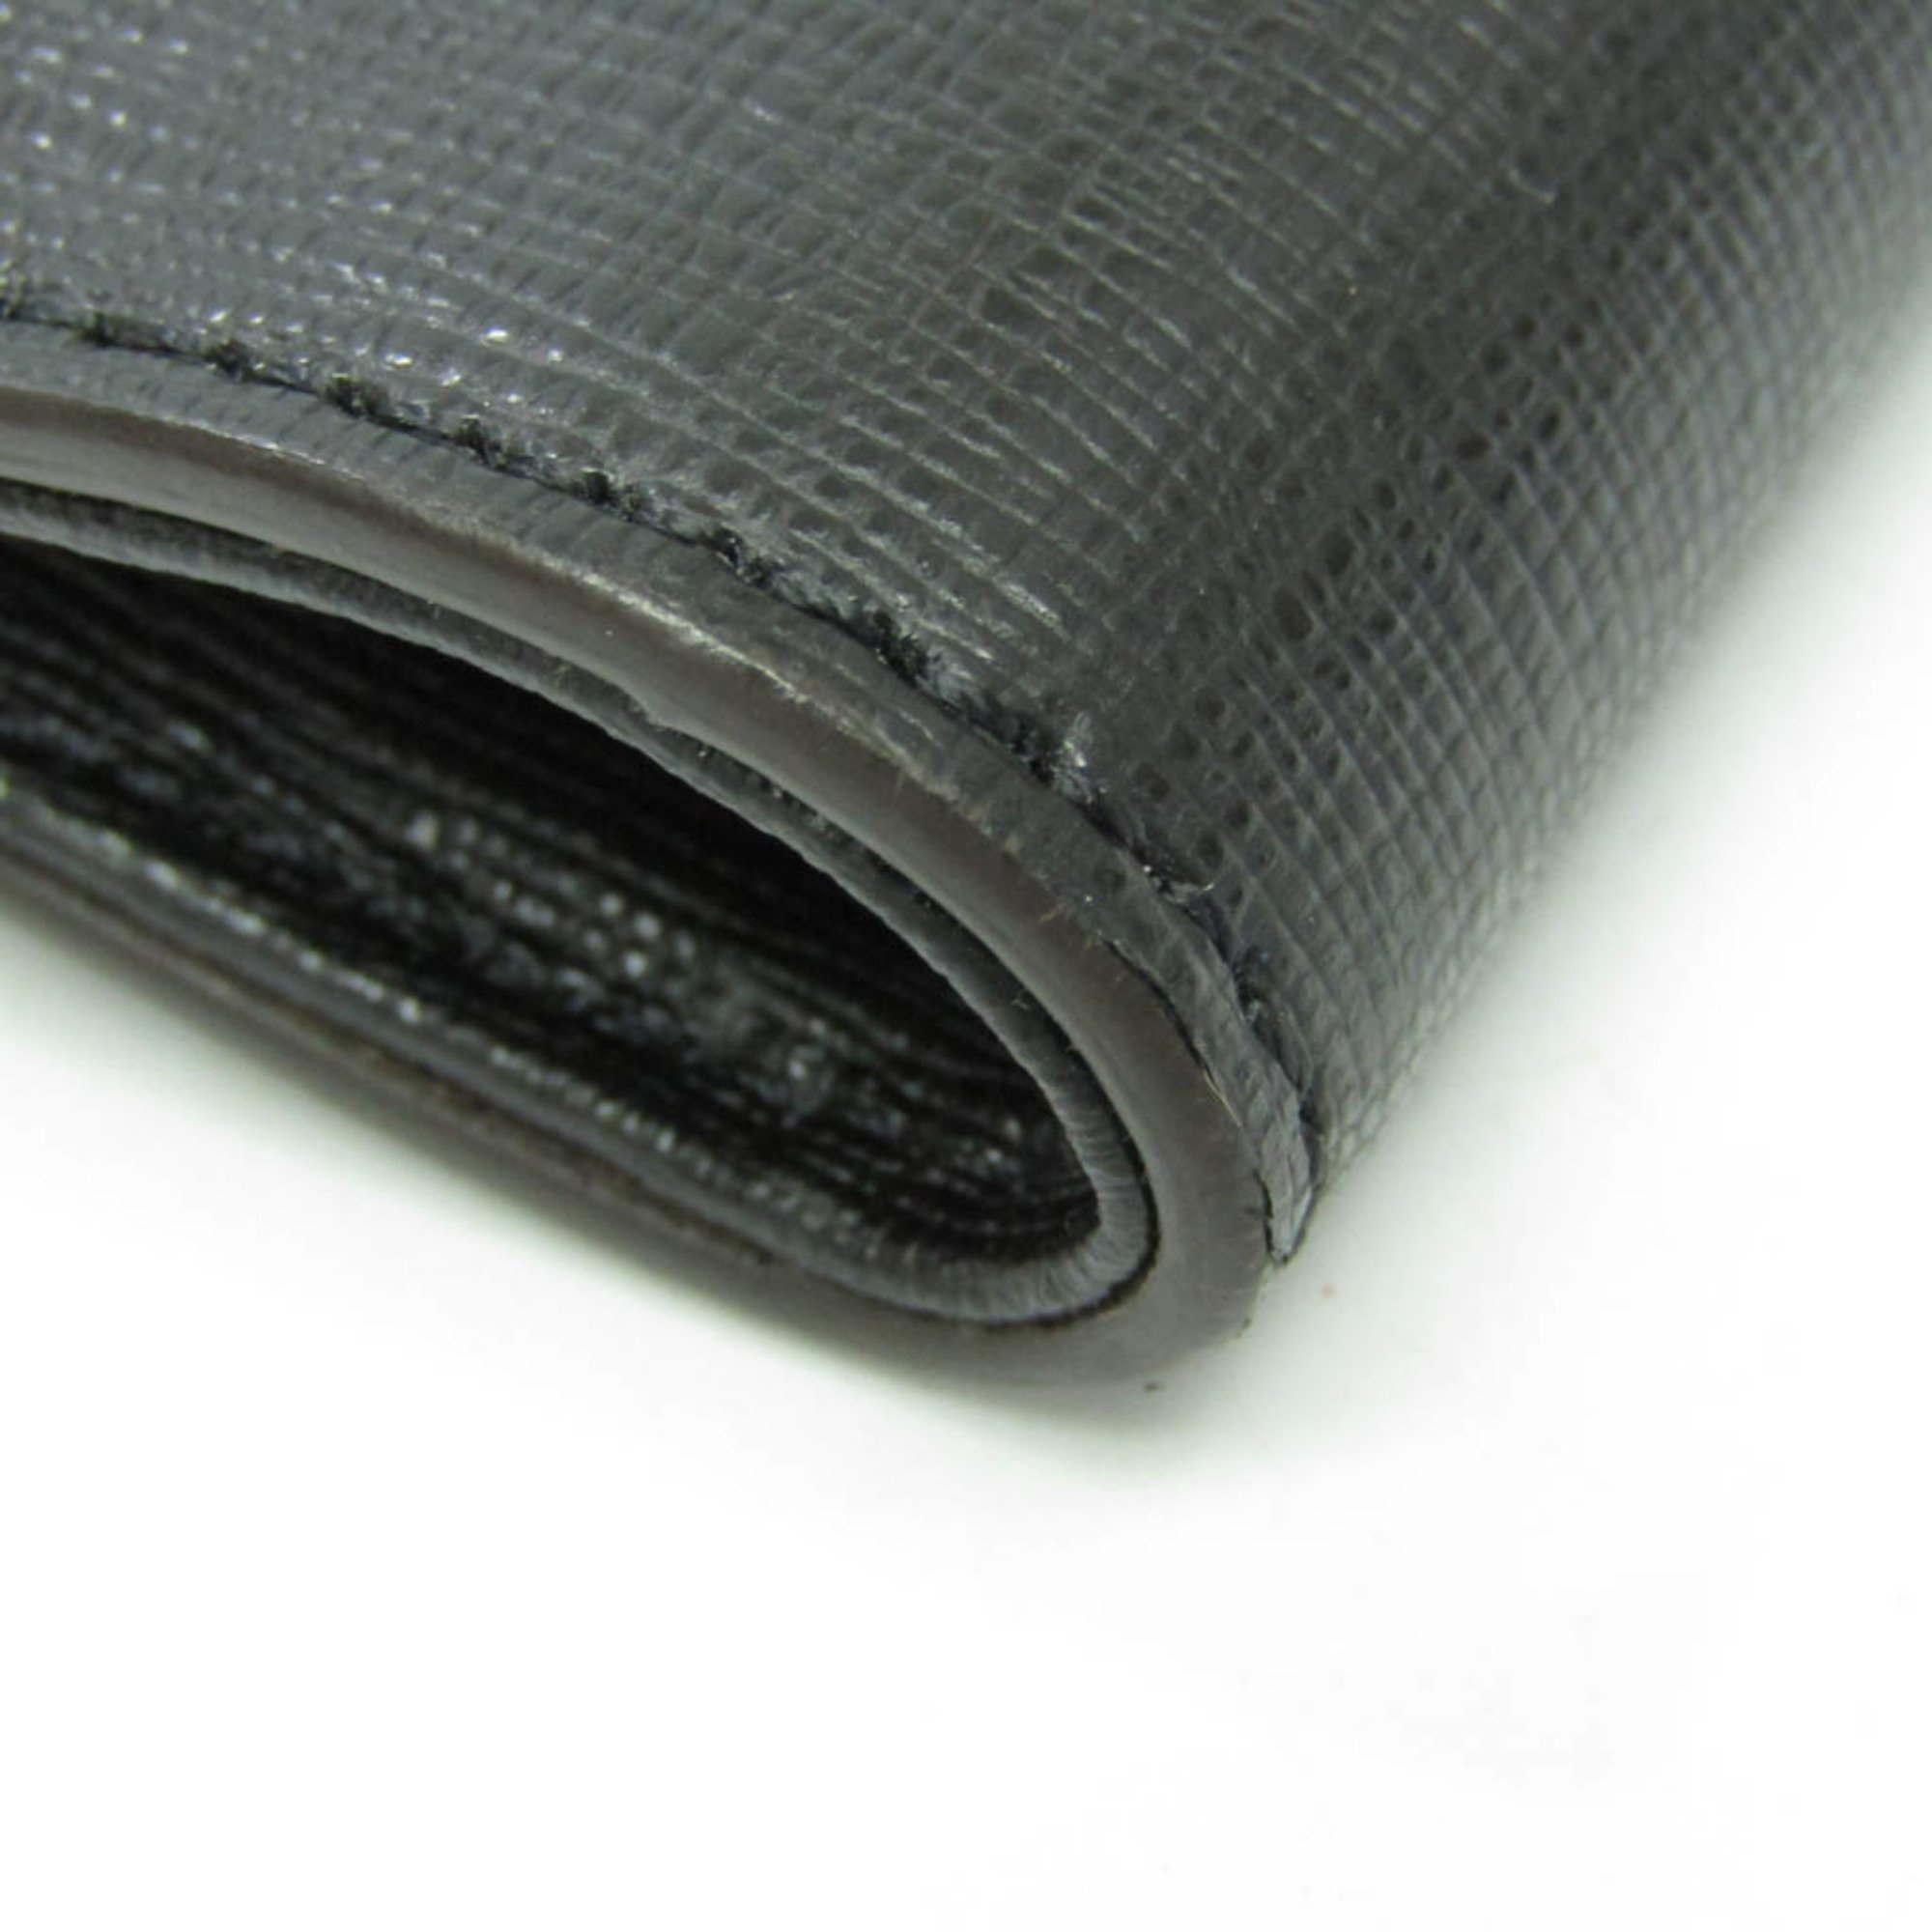 Fendi Chain Women's Leather Tote Bag Black,Silver